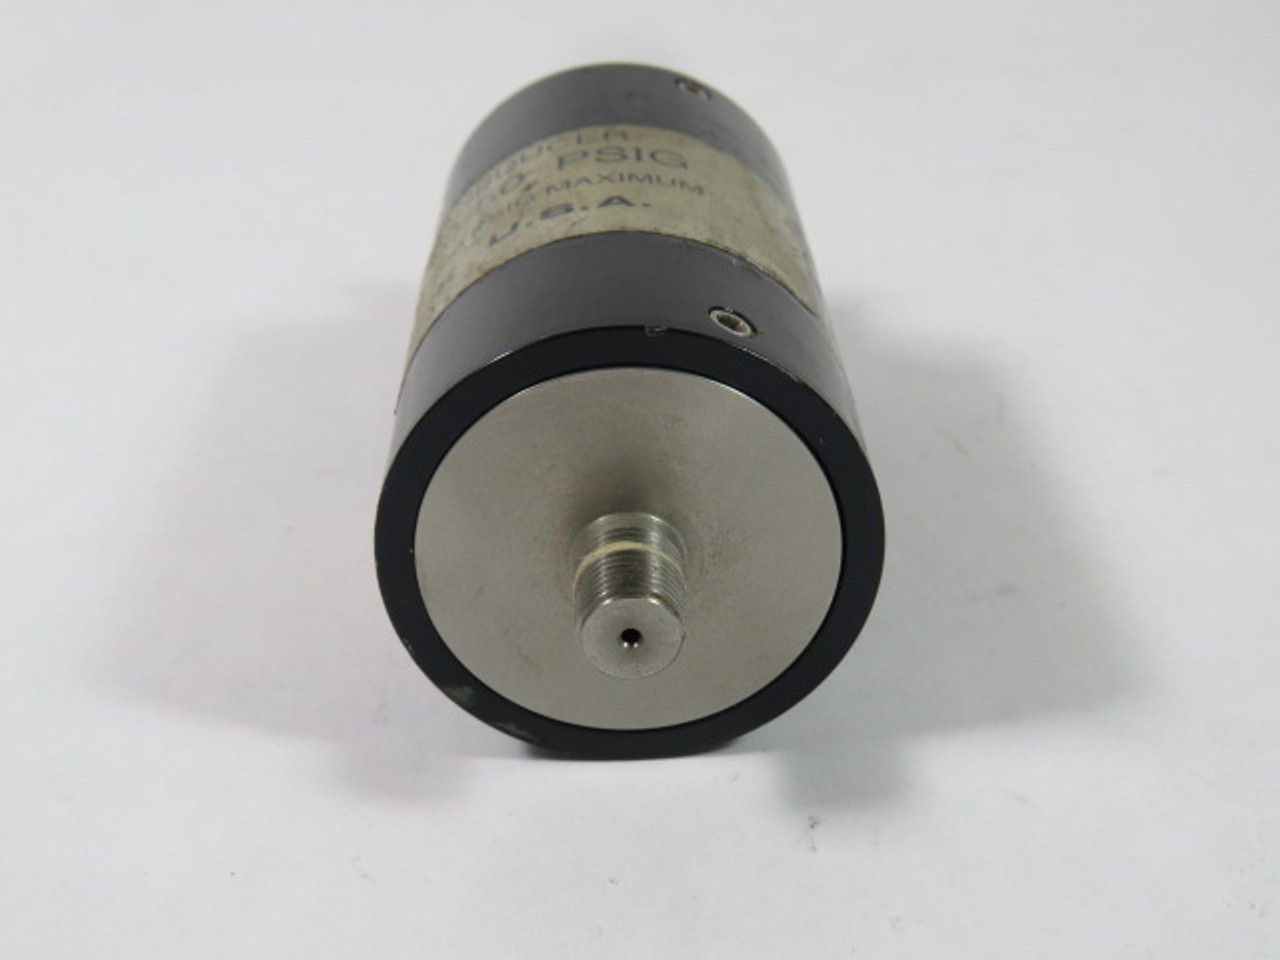 Uson 455 Type K Pressure Reducer 0-50PSIG USED